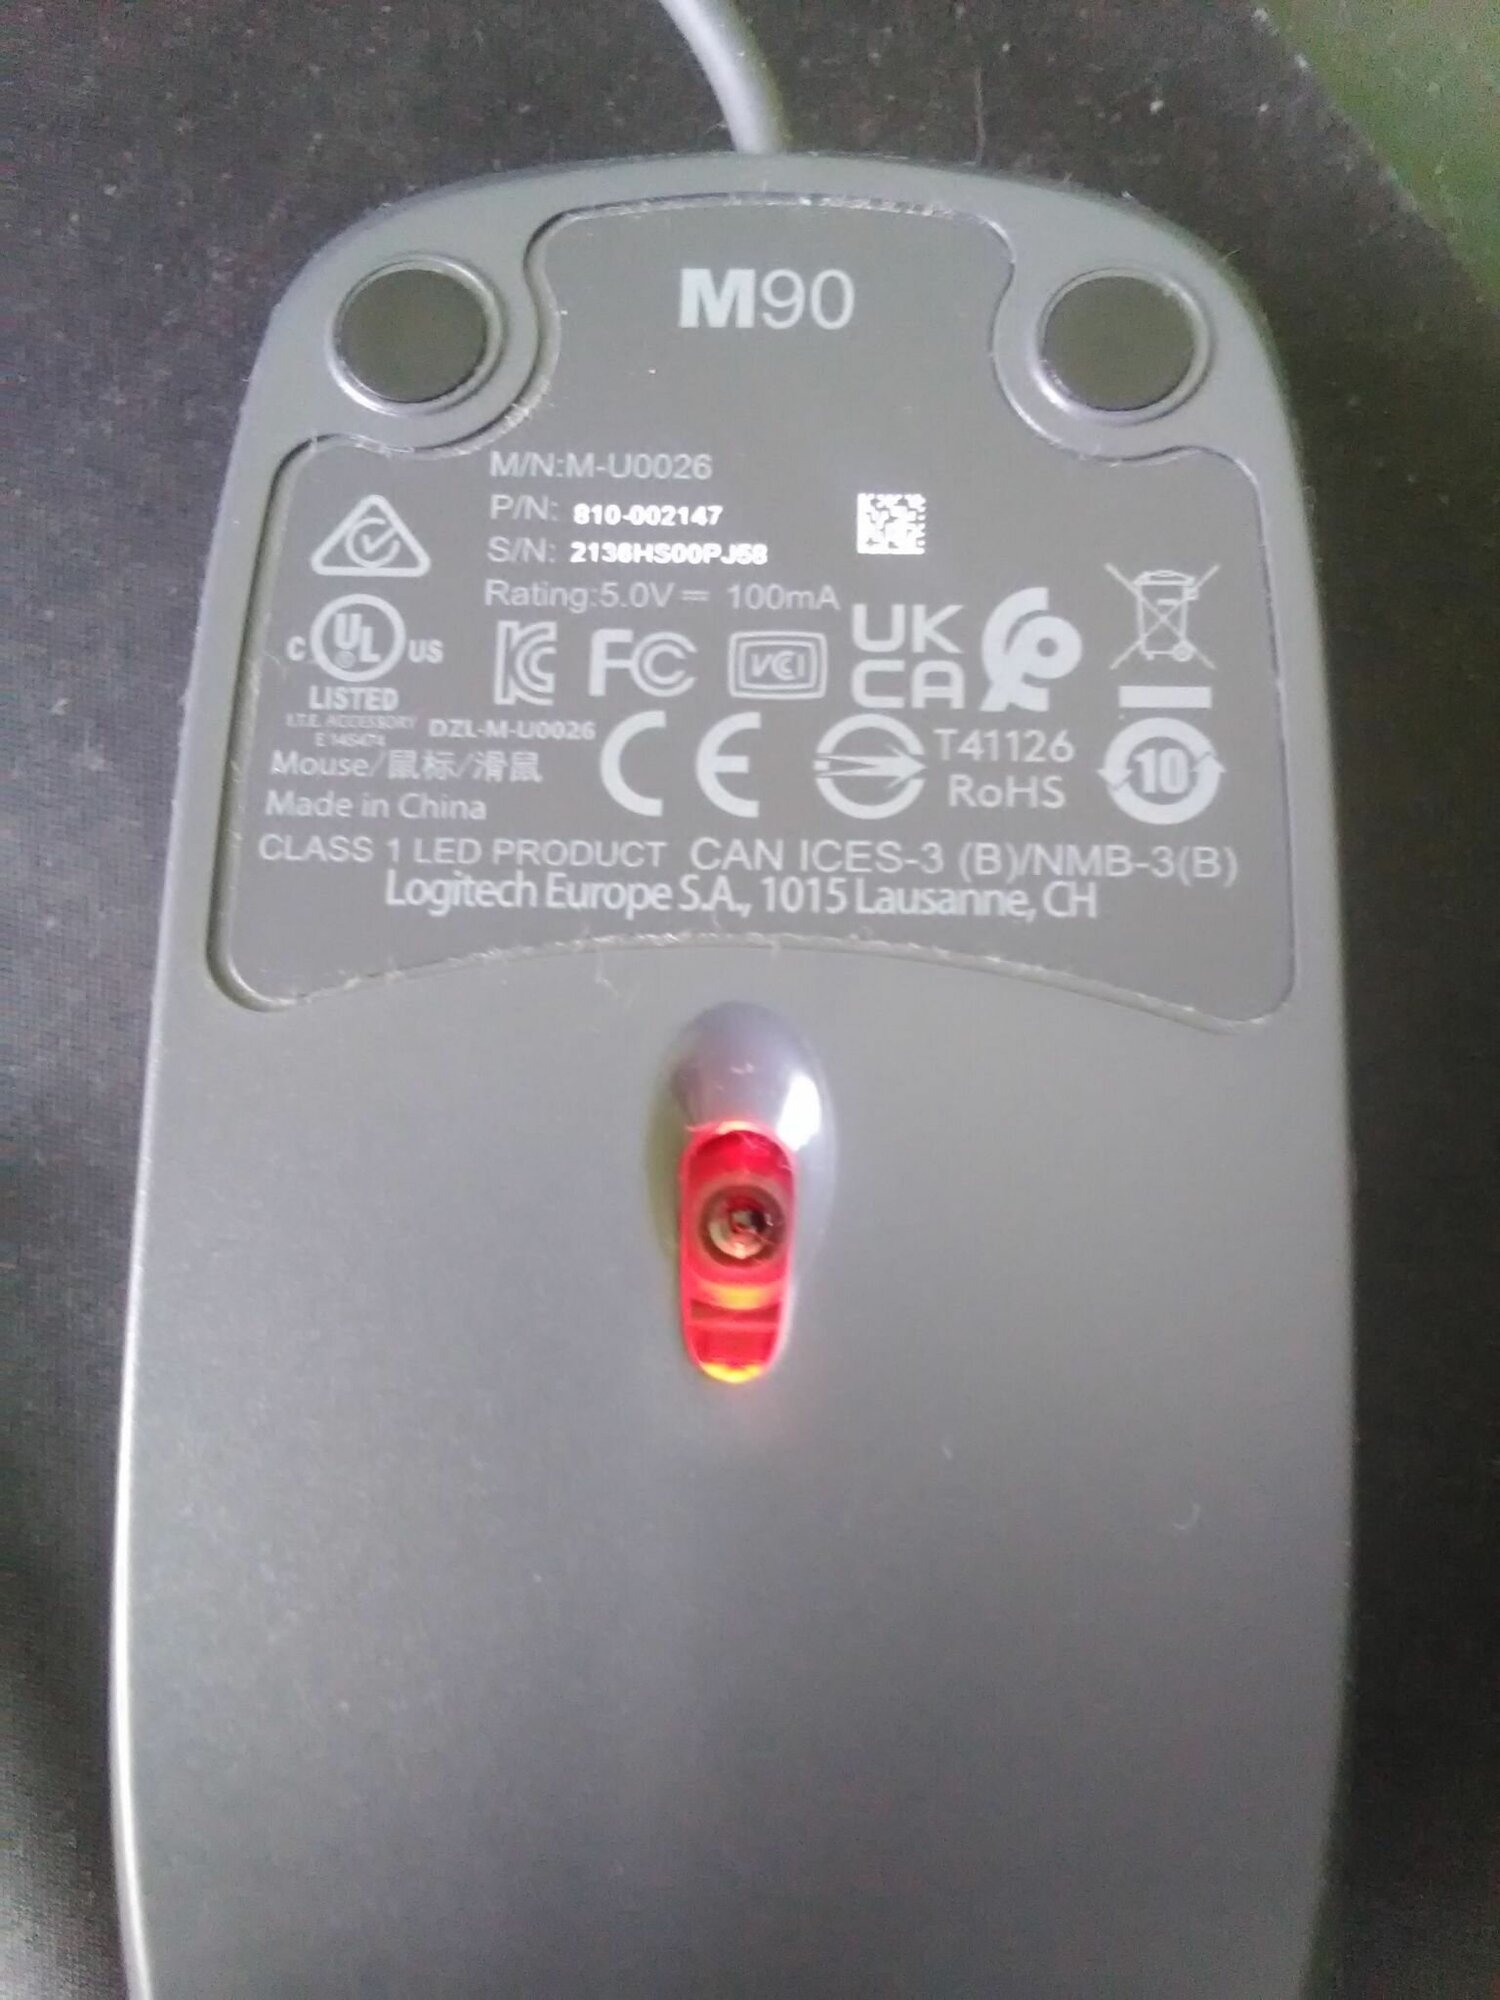 Мышь Logitech M90 Black (черная,оптическая, 1000dpi, USB, 1.8м) (арт. 910-001970, M/N: M-U0026) - фото №13